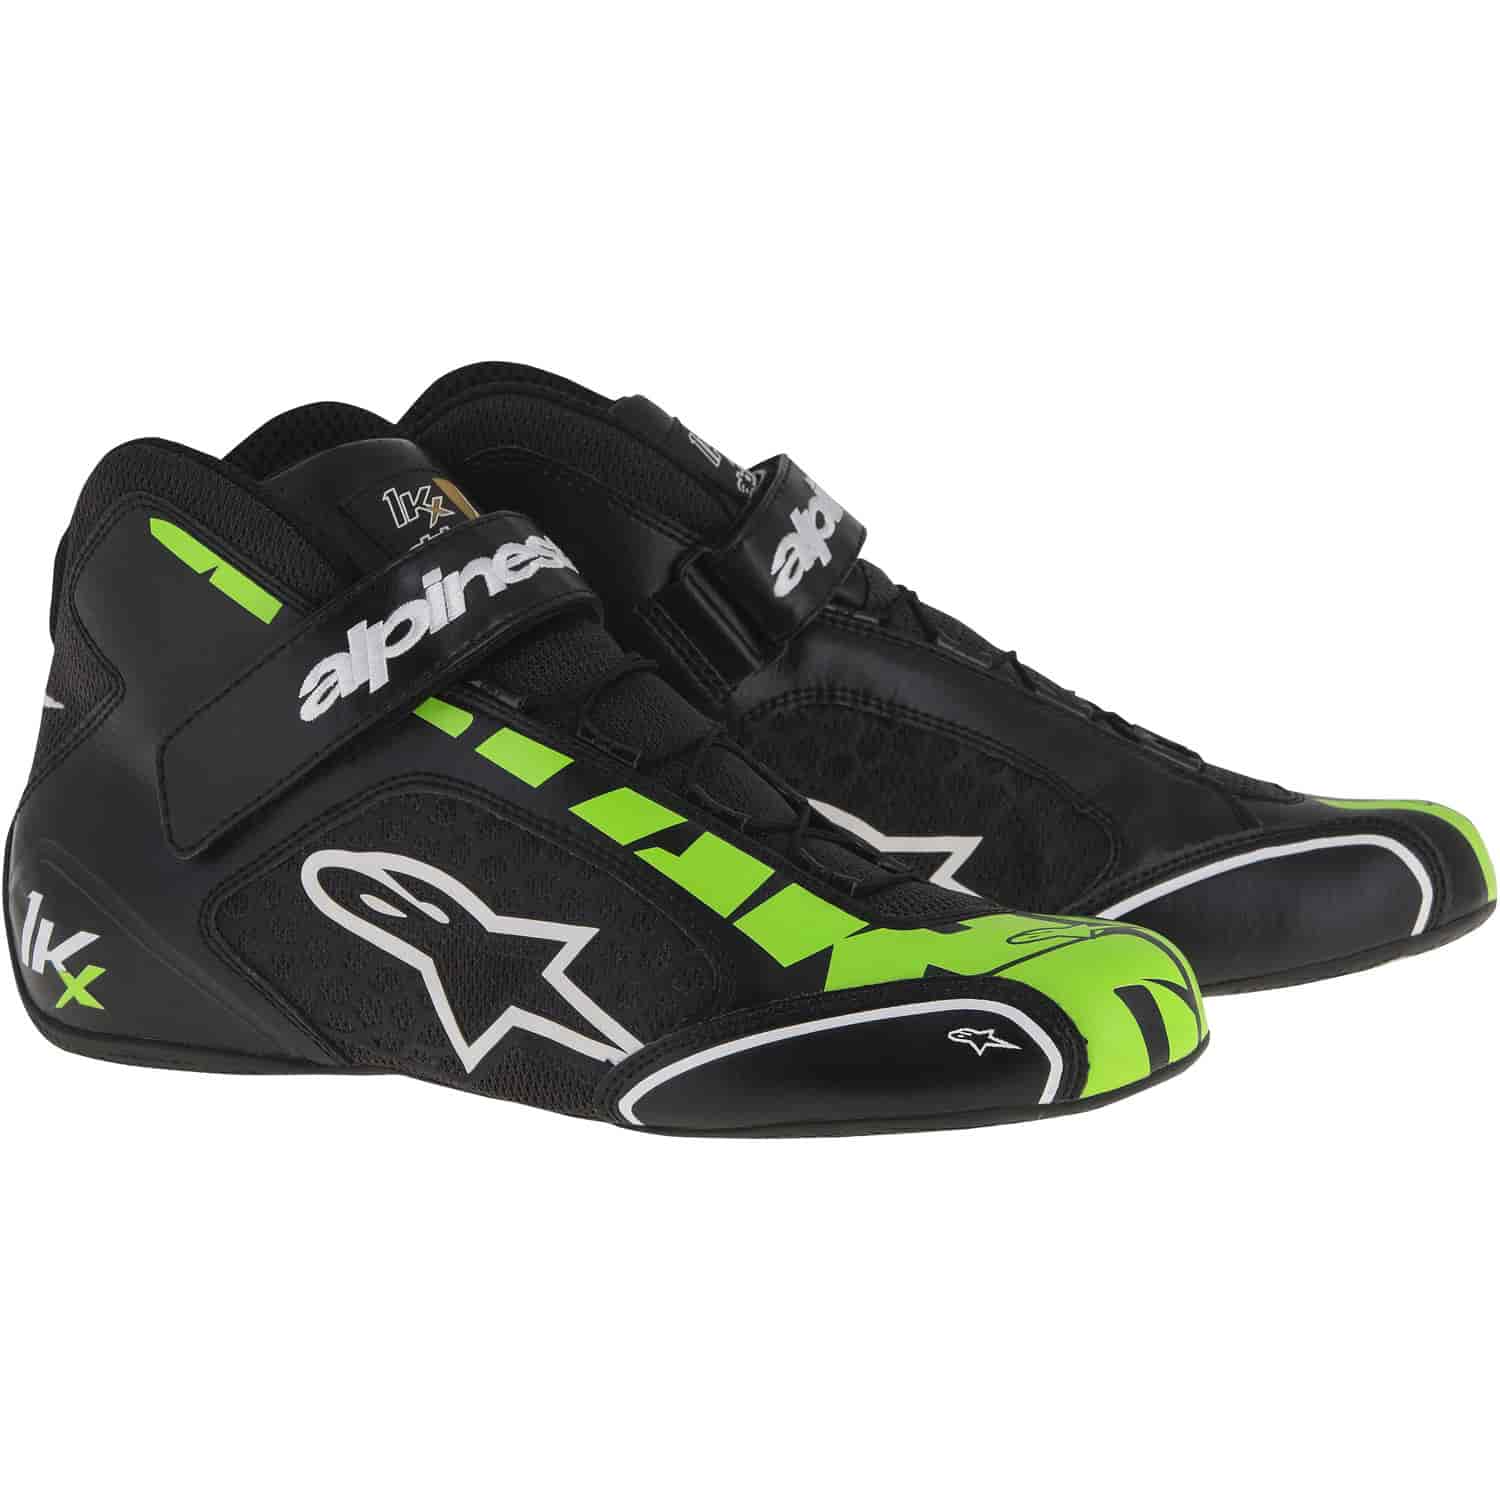 Tech 1-KX Shoes Black/Green Fluorescent